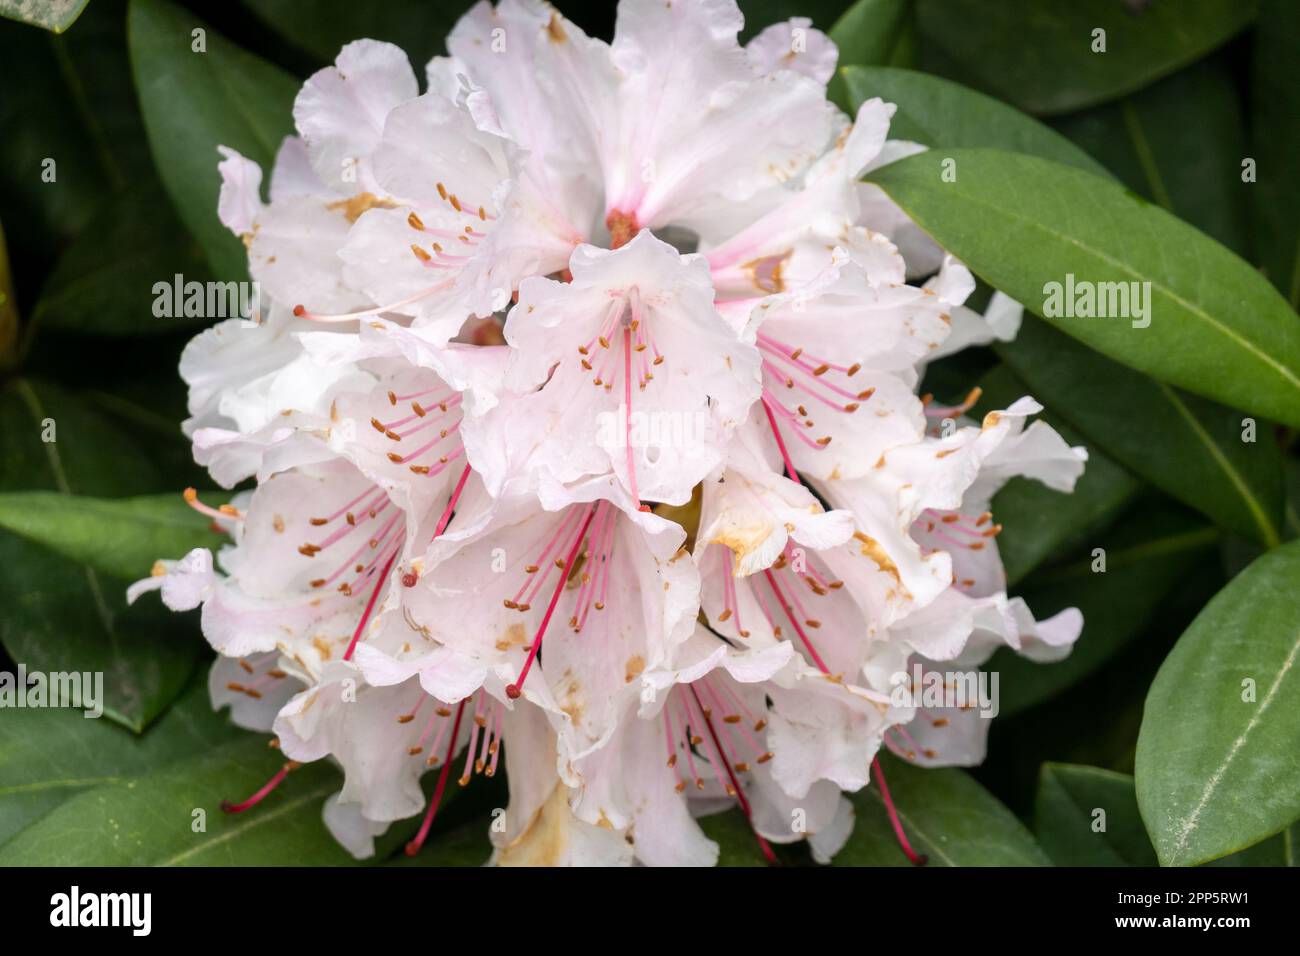 Rhododendron, groupe de fleurs rose clair presque blanches au printemps, pays-Bas Banque D'Images